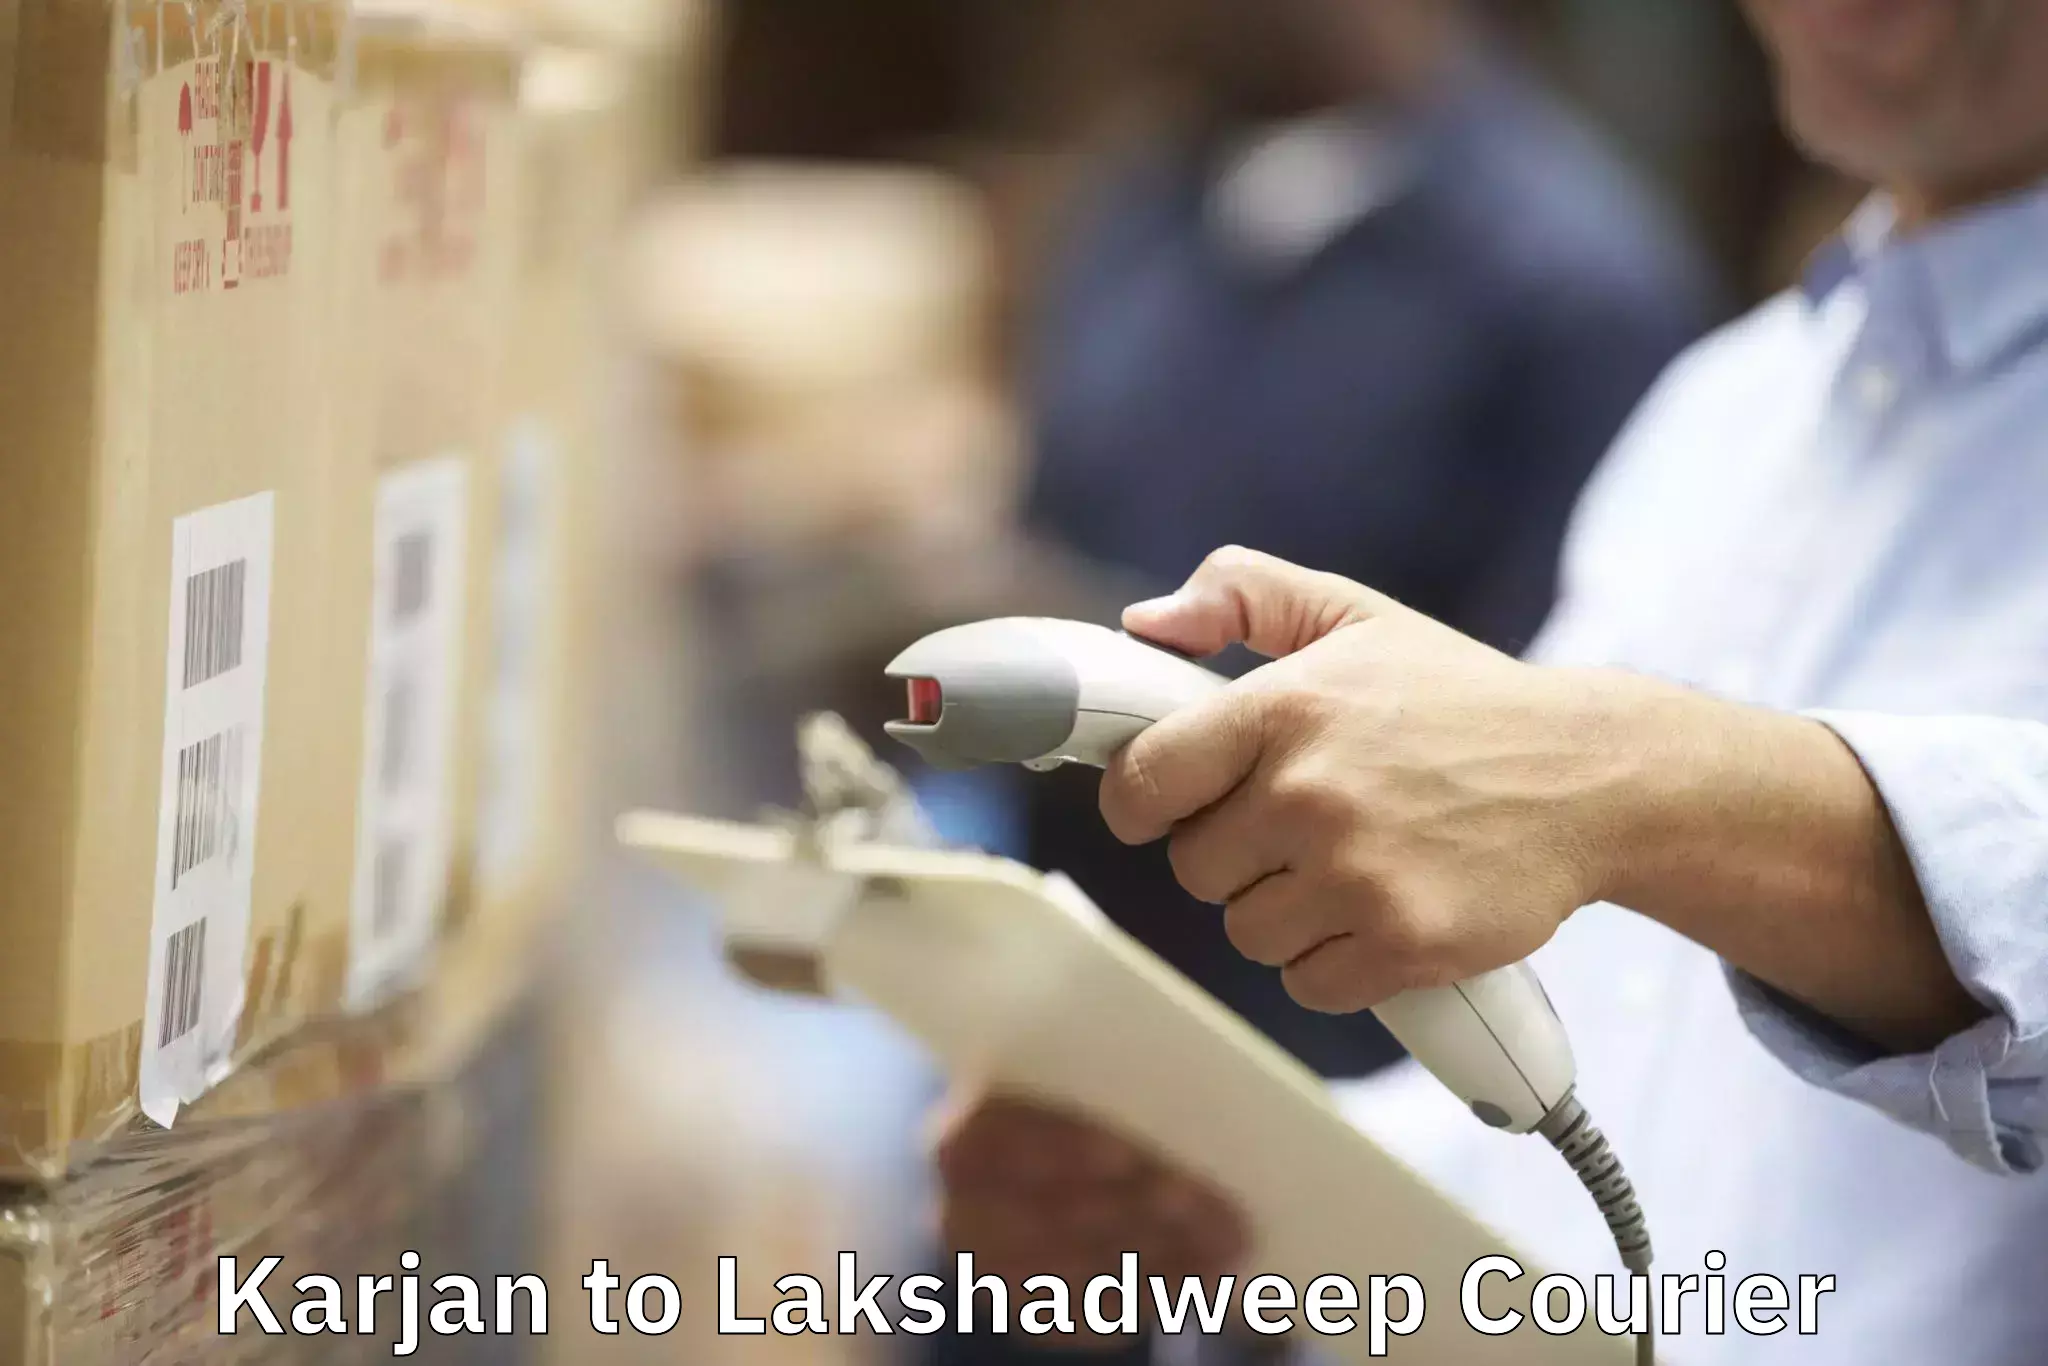 Furniture transport company Karjan to Lakshadweep